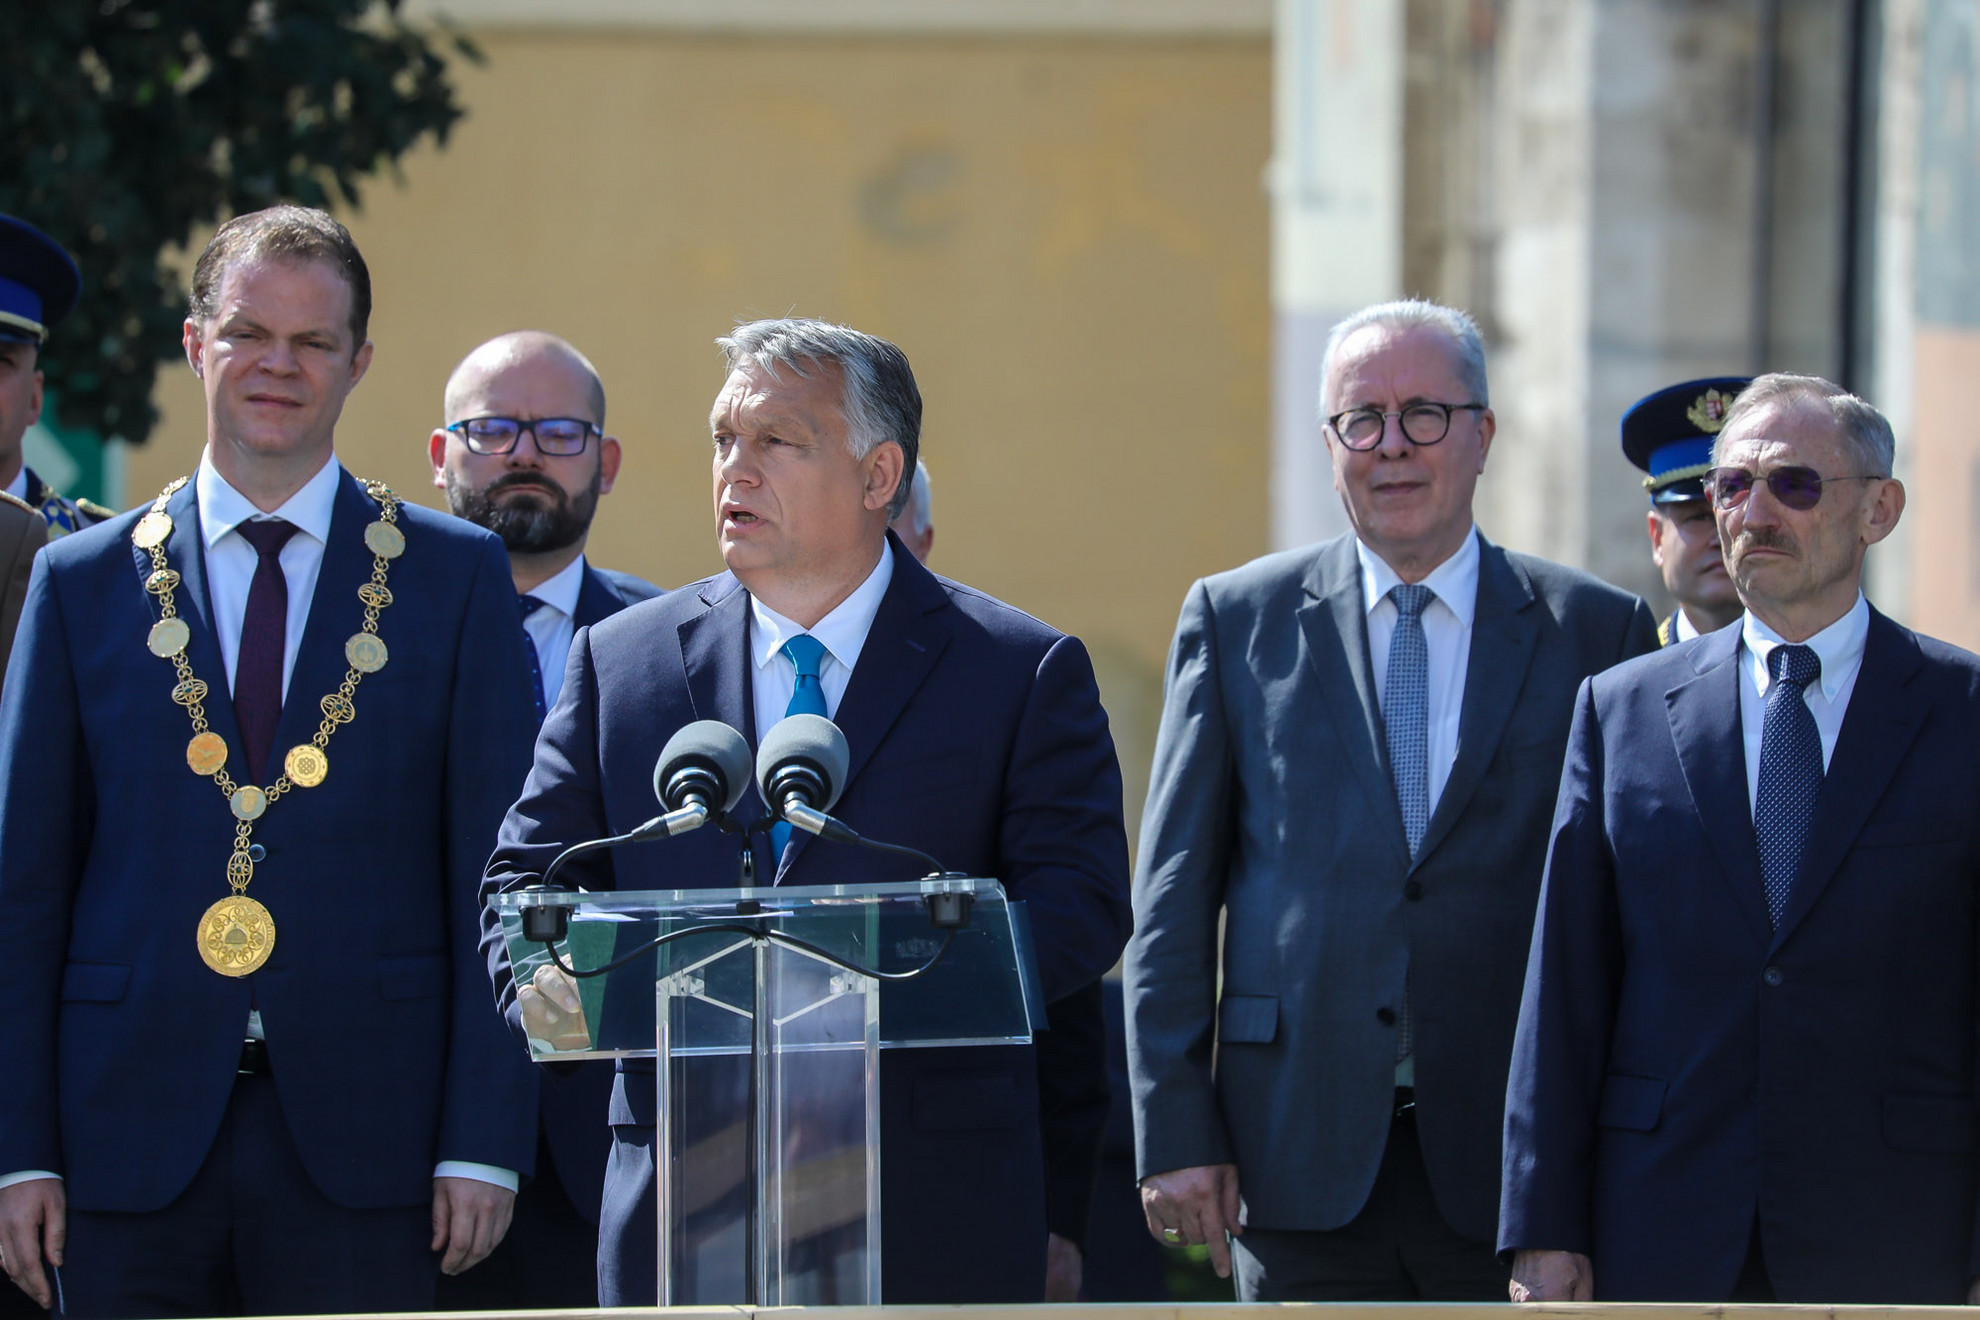 Magyarországon sosem fogják magukra hagyni az egyenruhásokat - jelentette ki Orbán Viktor